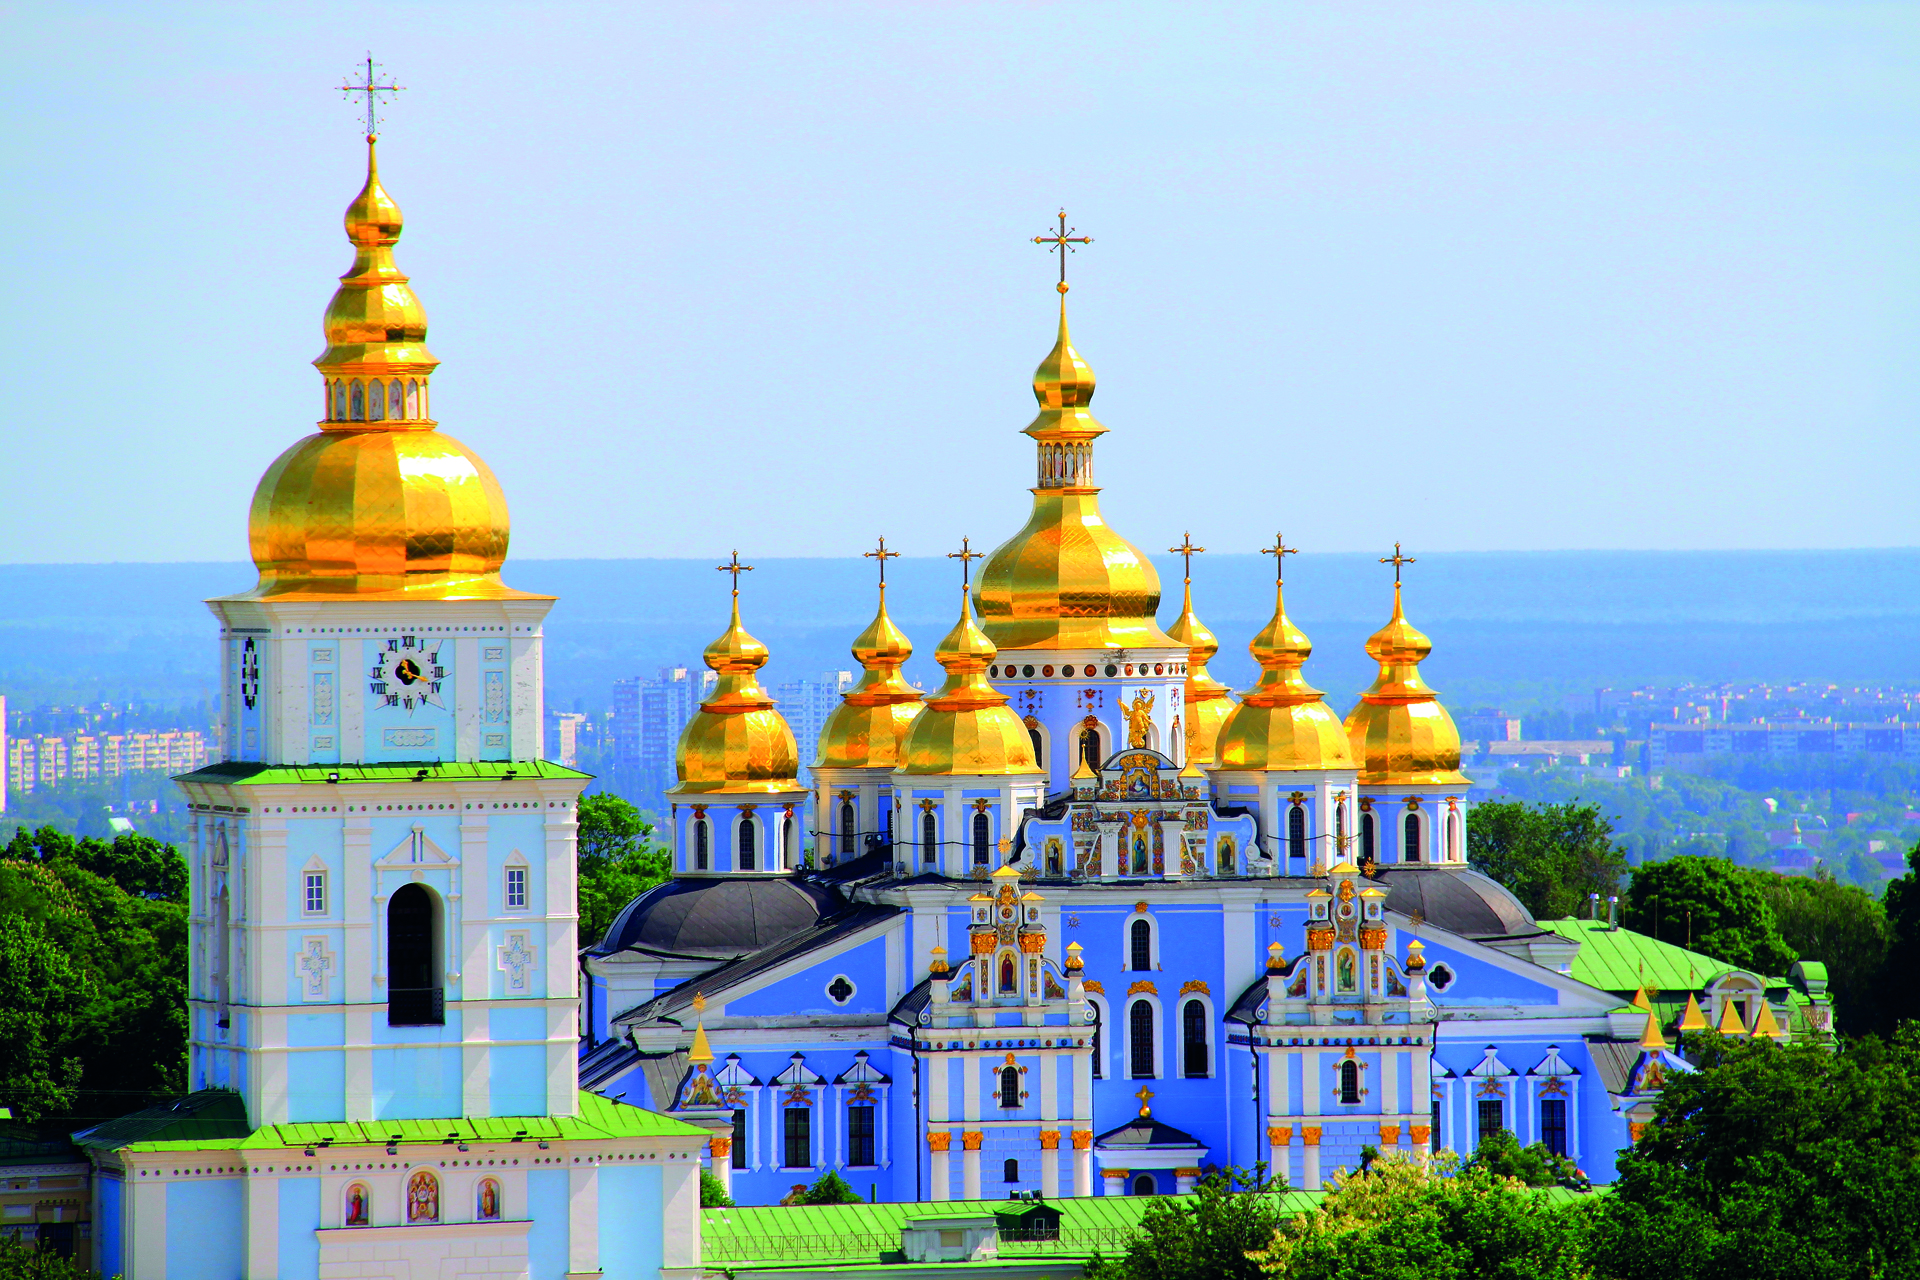 Monastero dorato di San Michele, Kiev, iStock.com/agustavop